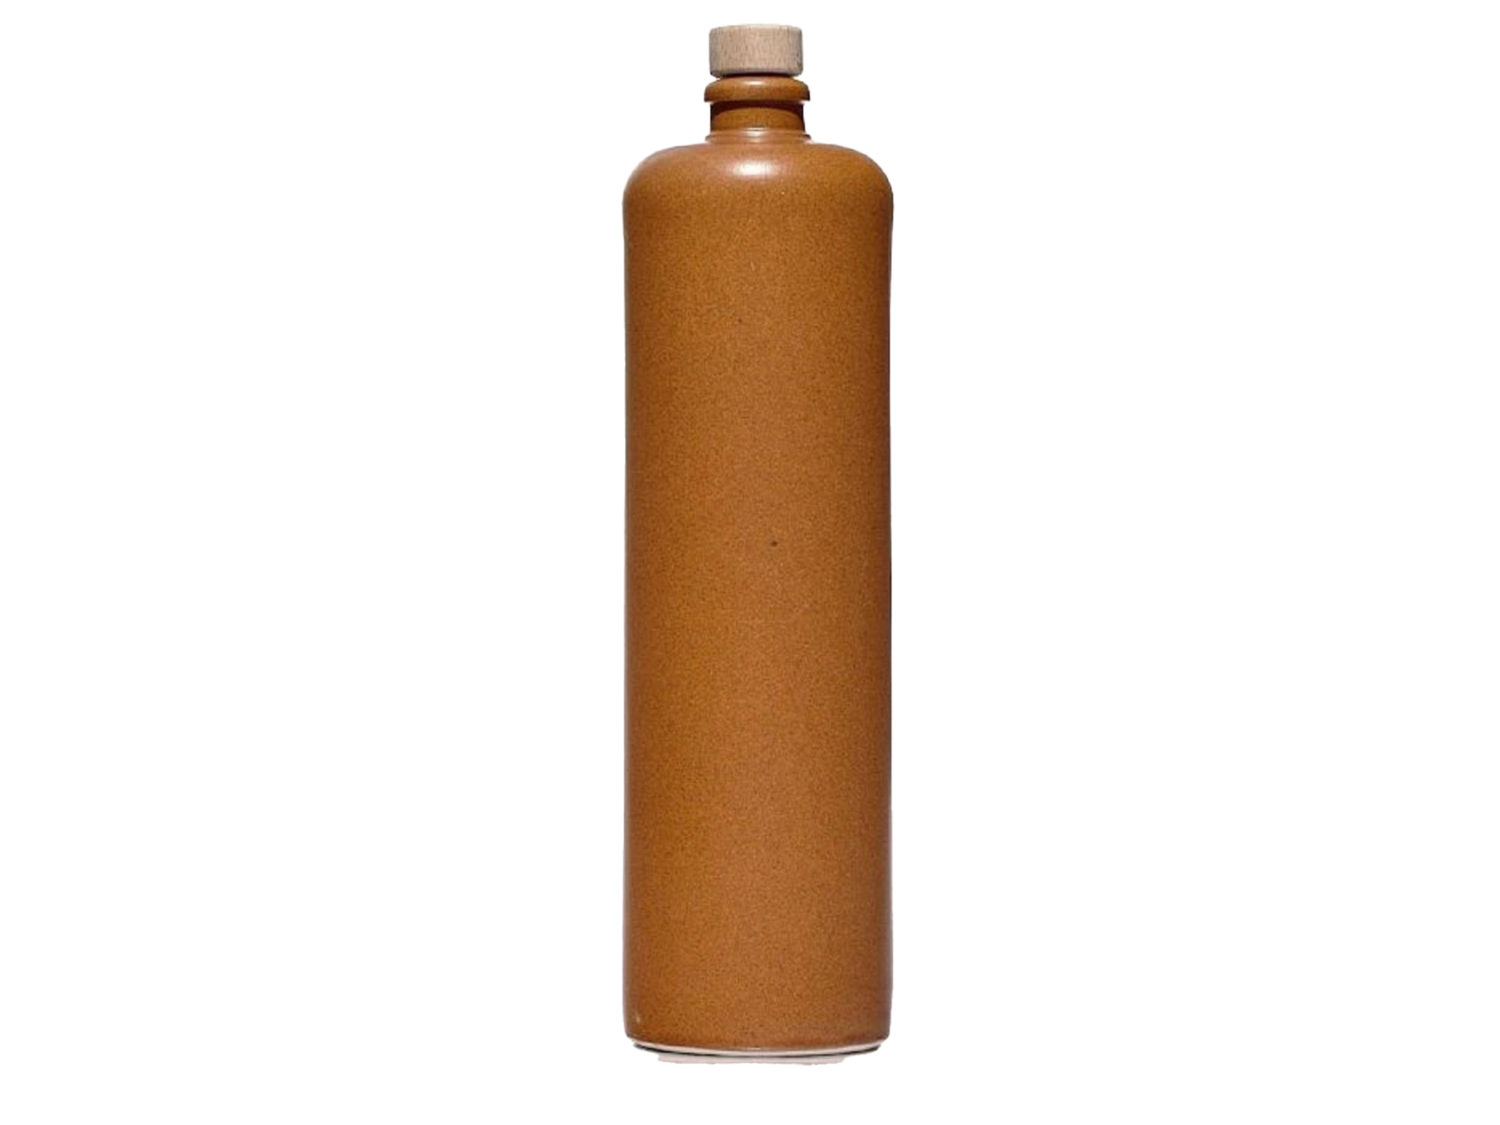 VRIPINE bouteilles en grés terracotta - (Uniquement disponible à location)